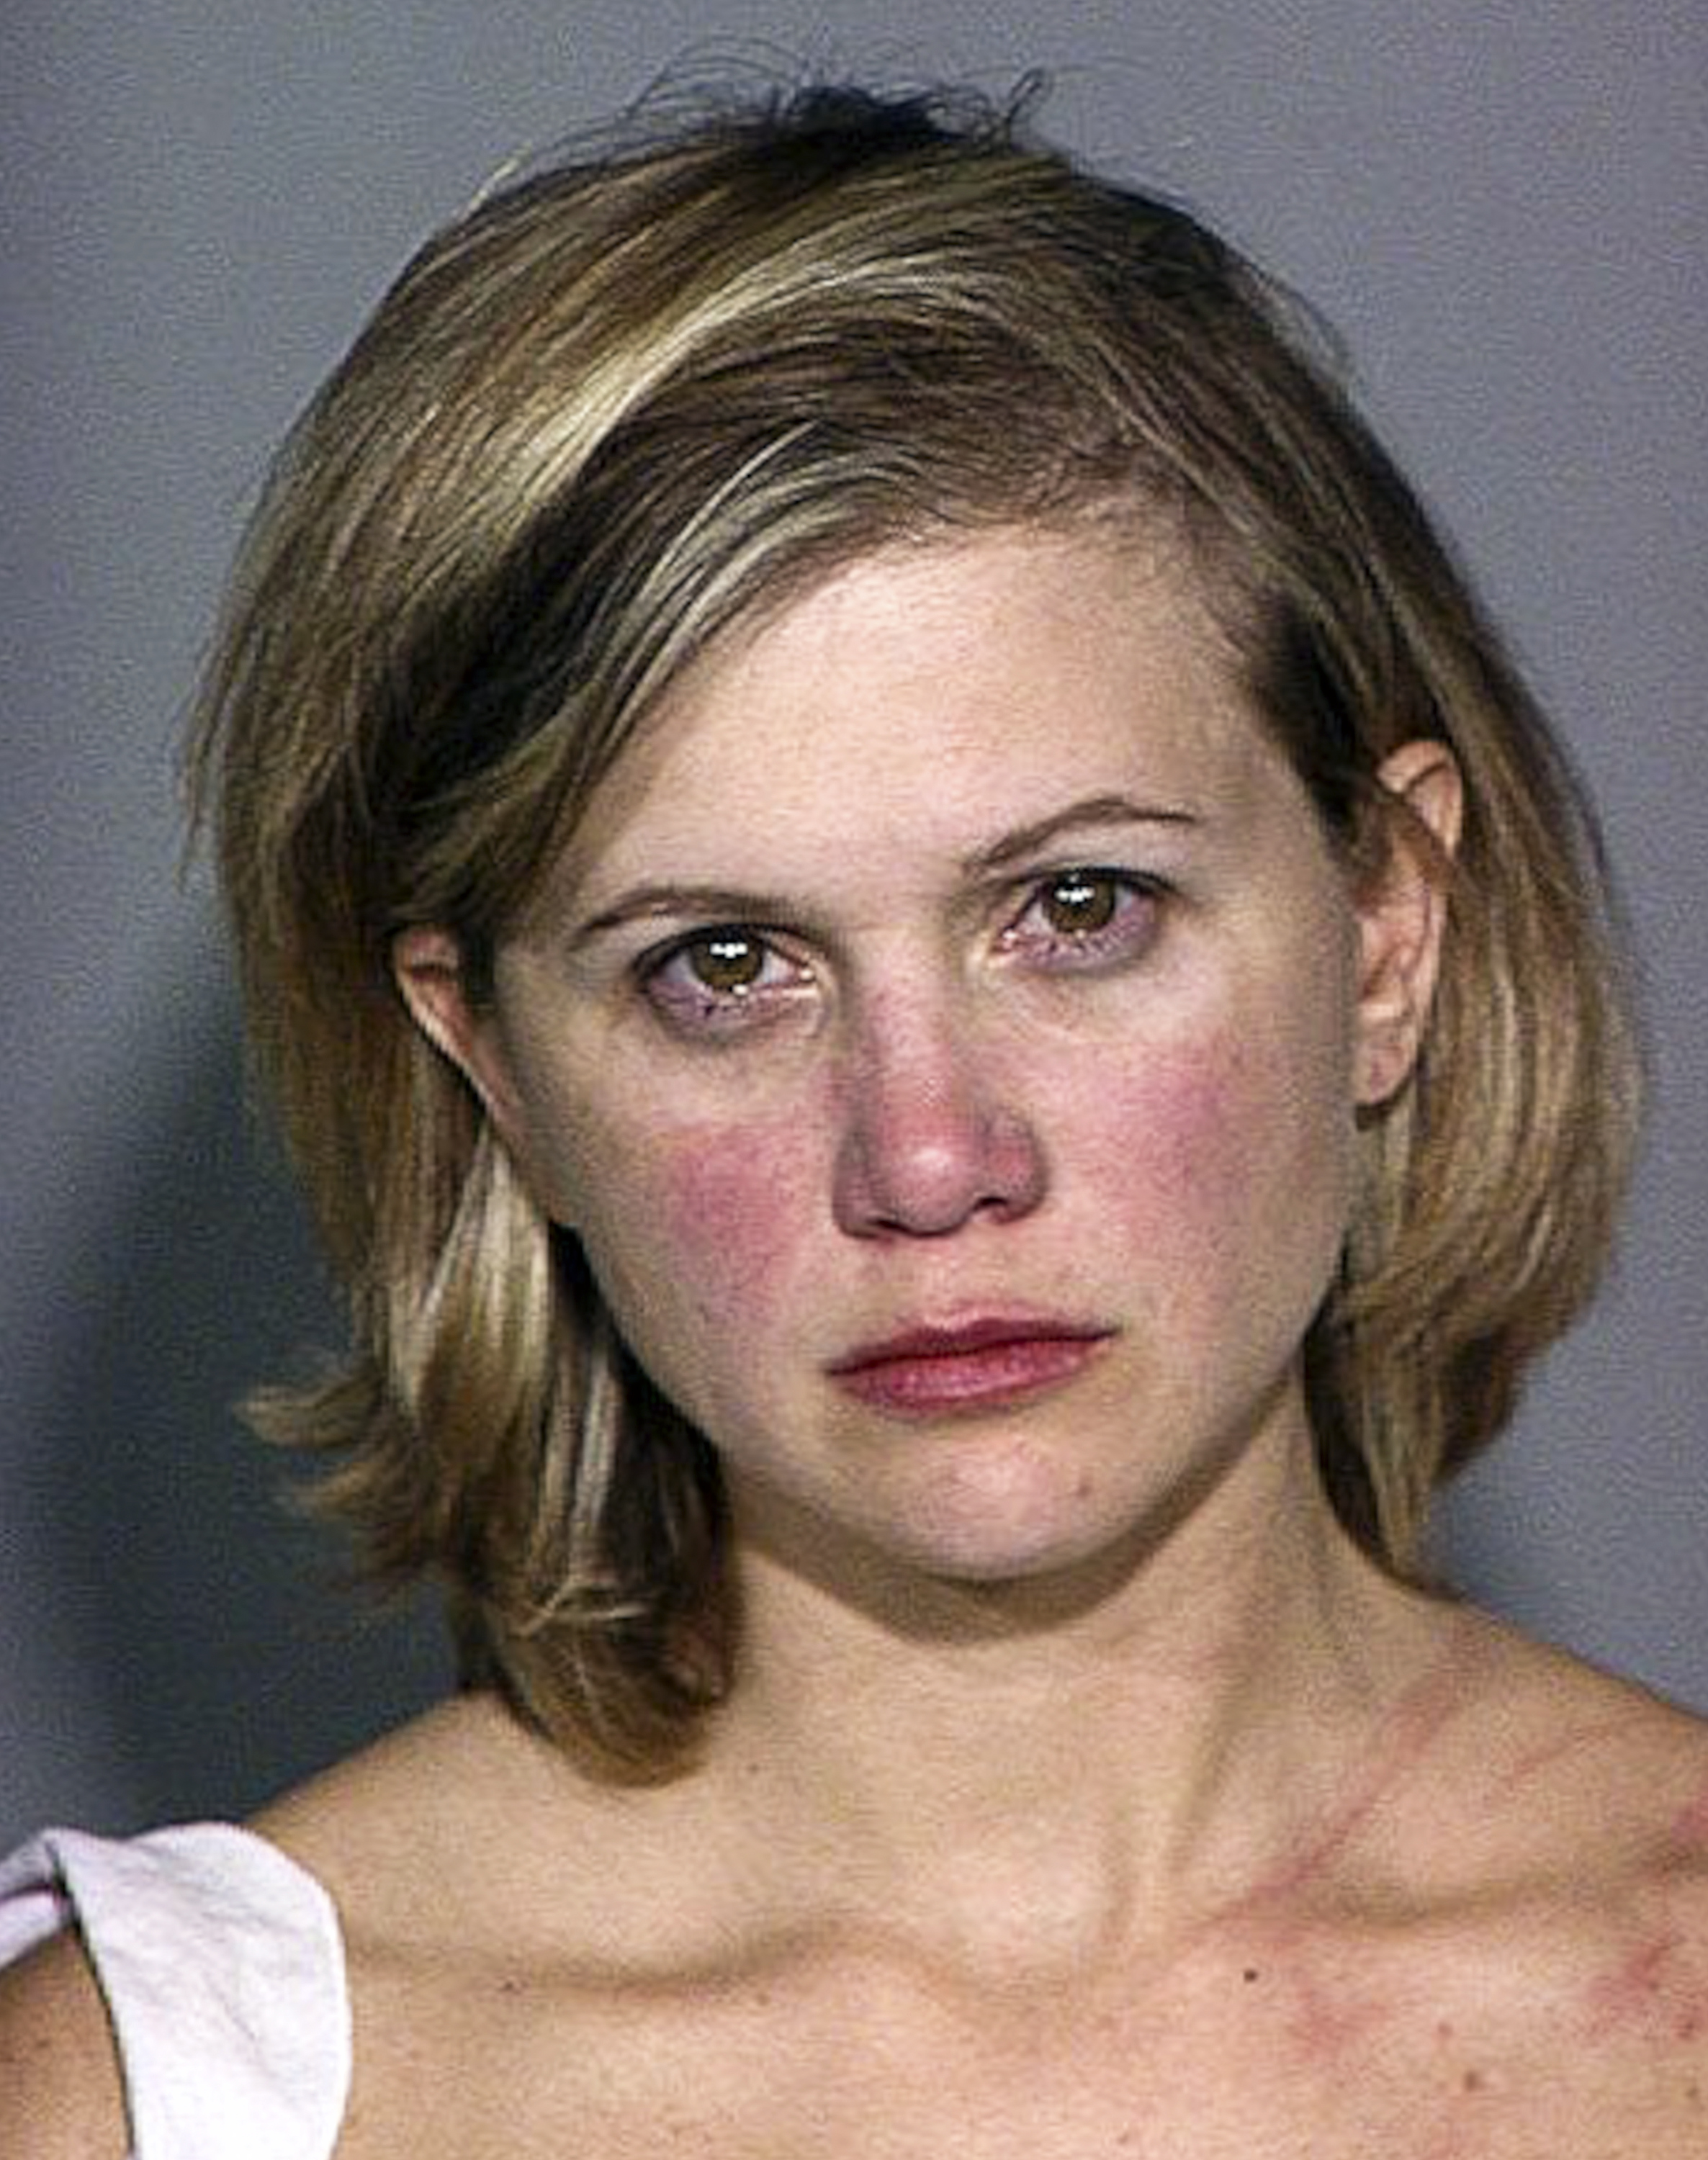 Tracey Gold sur une photo d'identité suite à son arrestation pour conduite en état d'ivresse le 3 septembre 2004 à Ventura, en Californie. | Source : Getty Images